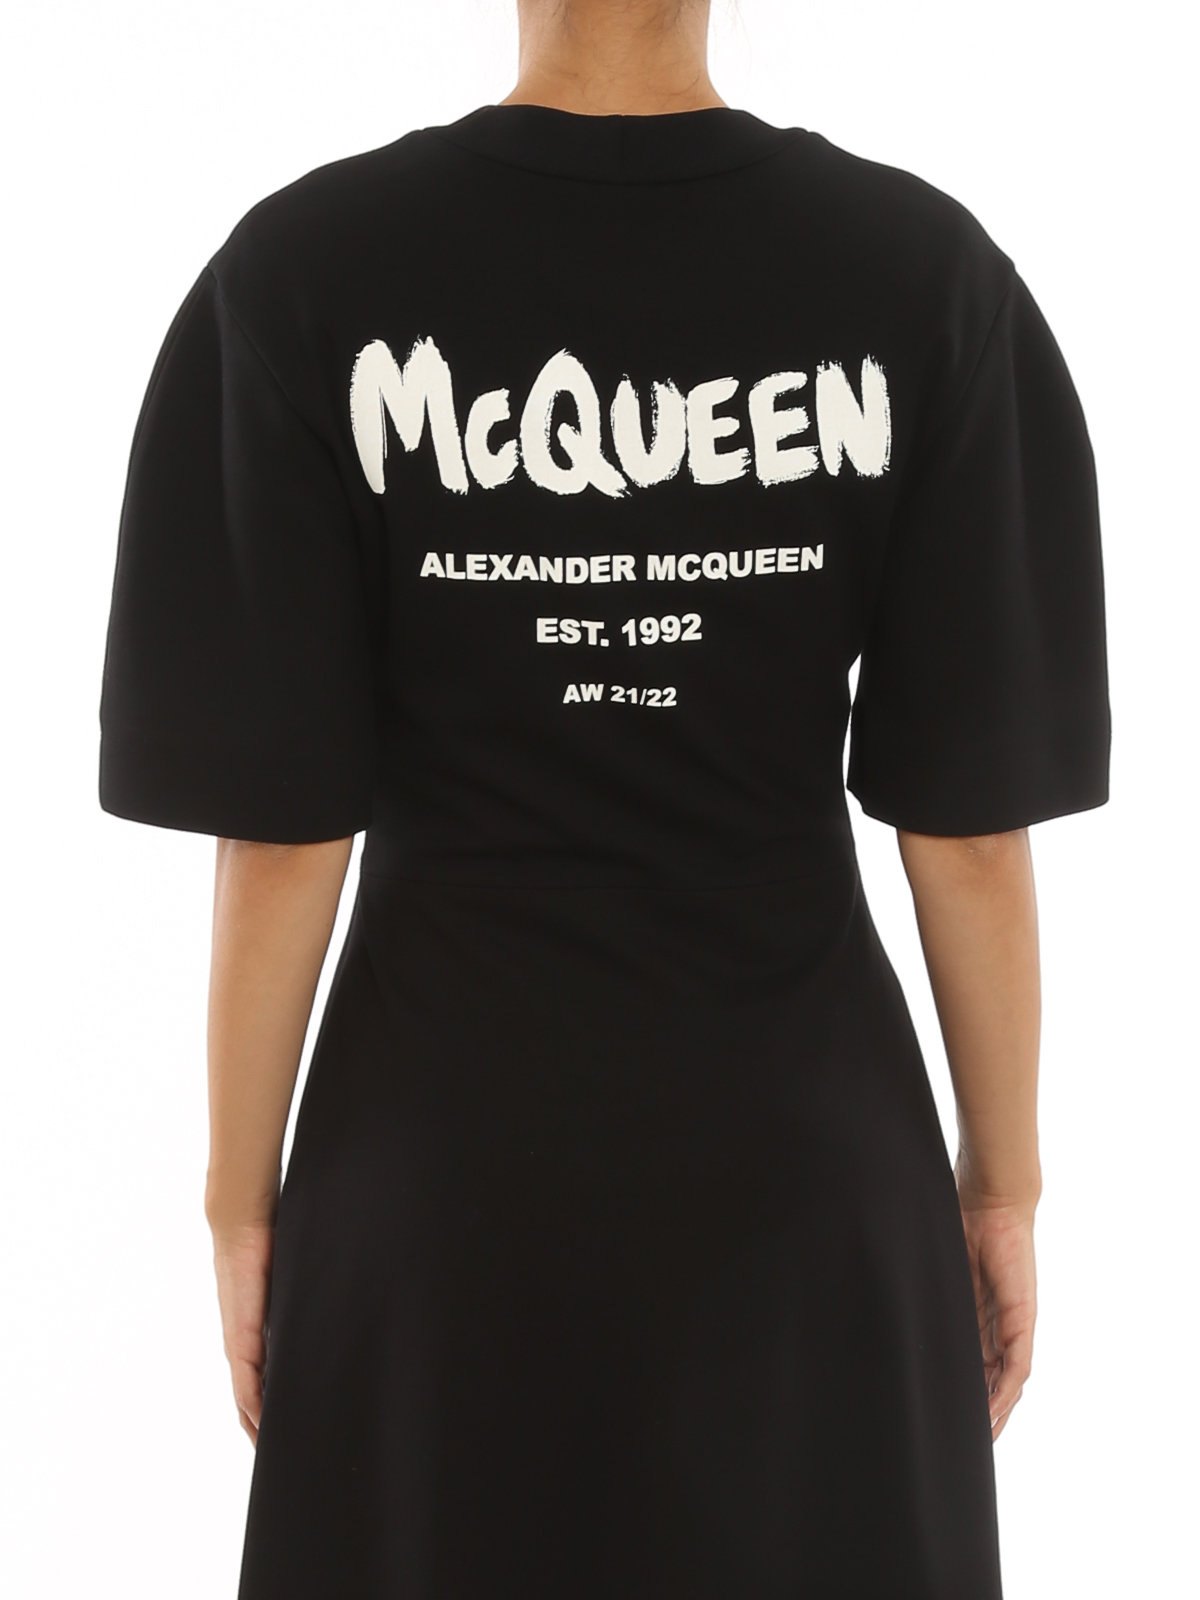 Shop Alexander Mcqueen Stretch Viscose Dress In Black